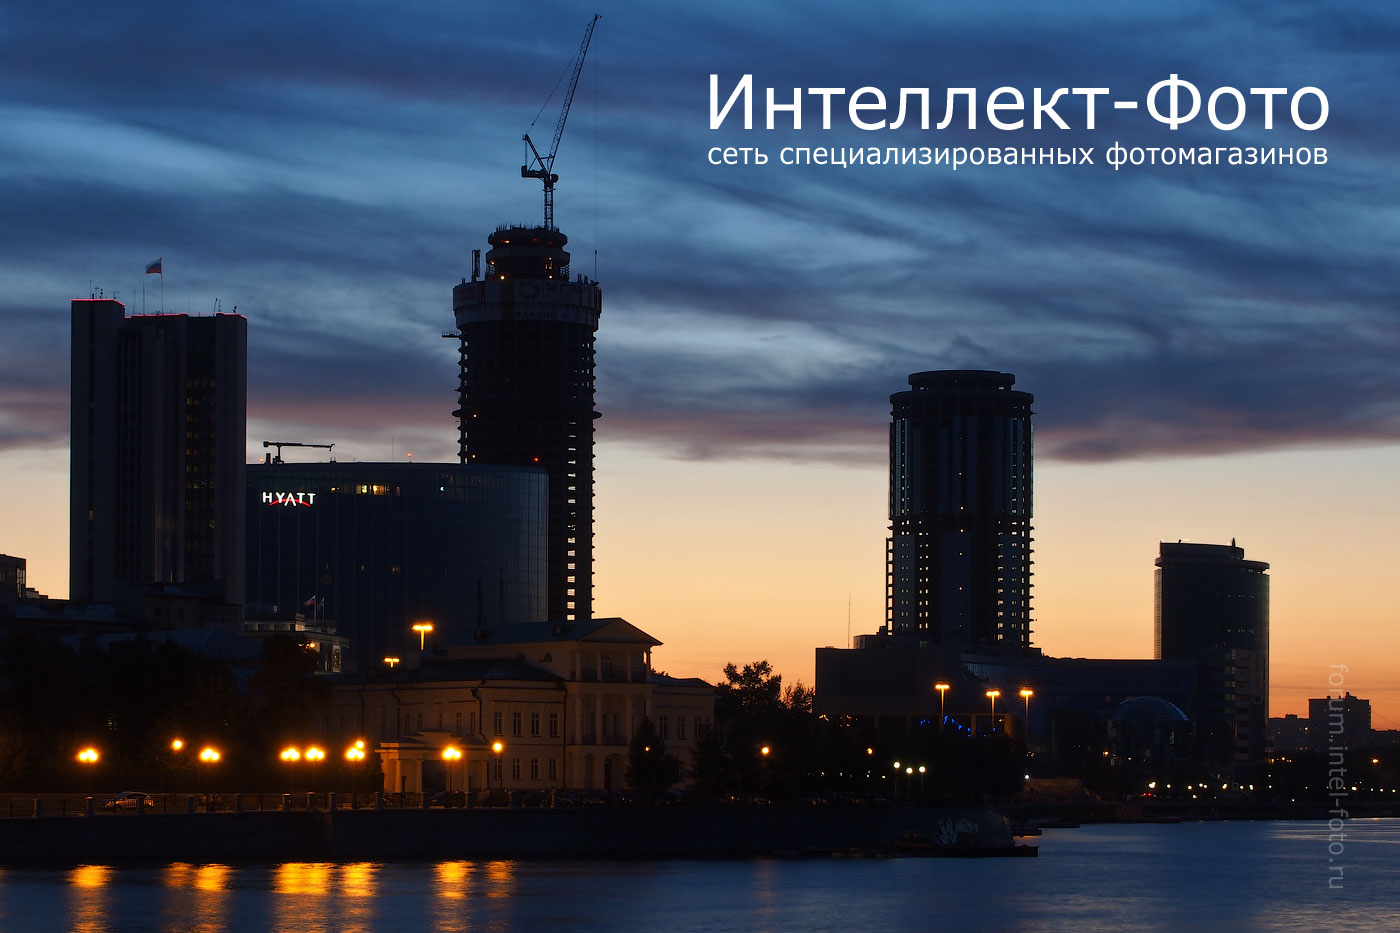 http://www.intel-foto.ru/content/publication/forum-tst/2013/2013-08/PEN_E-P5/tst-p1_cityscape/EP5_1442-15.jpg